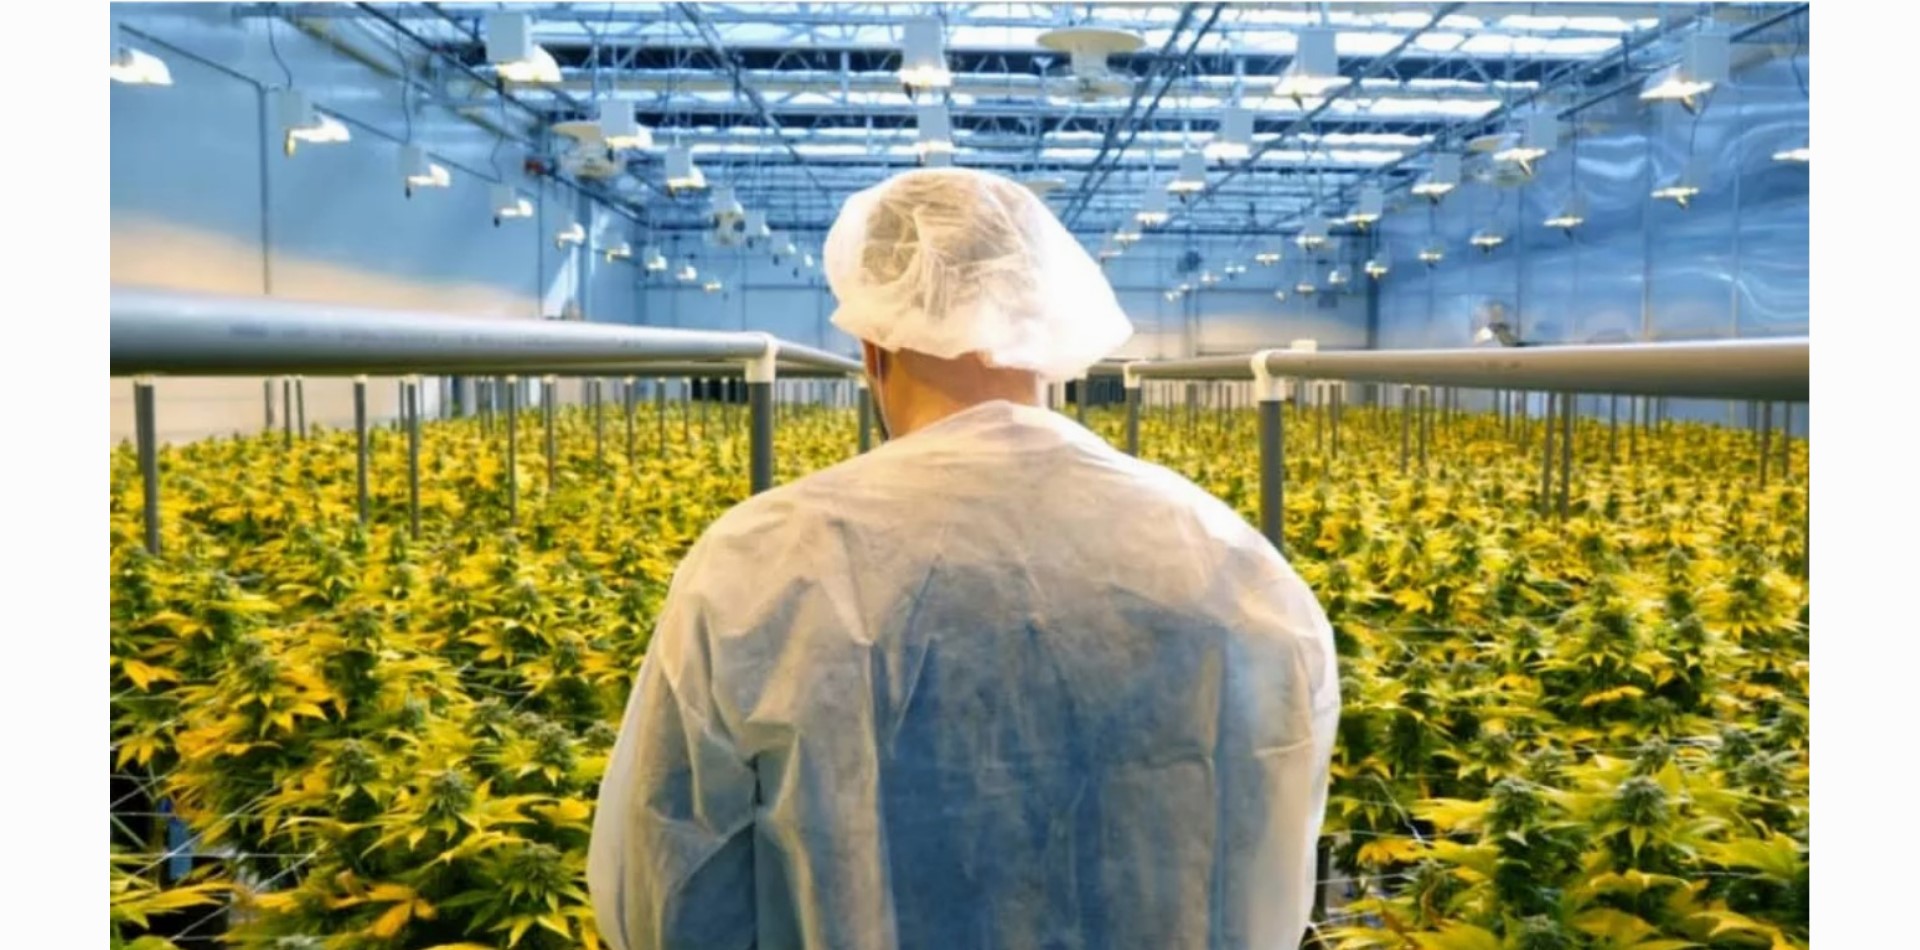 COVID-19 hinterlässt seine Spuren in der Cannabisindustrie, sagen Insider